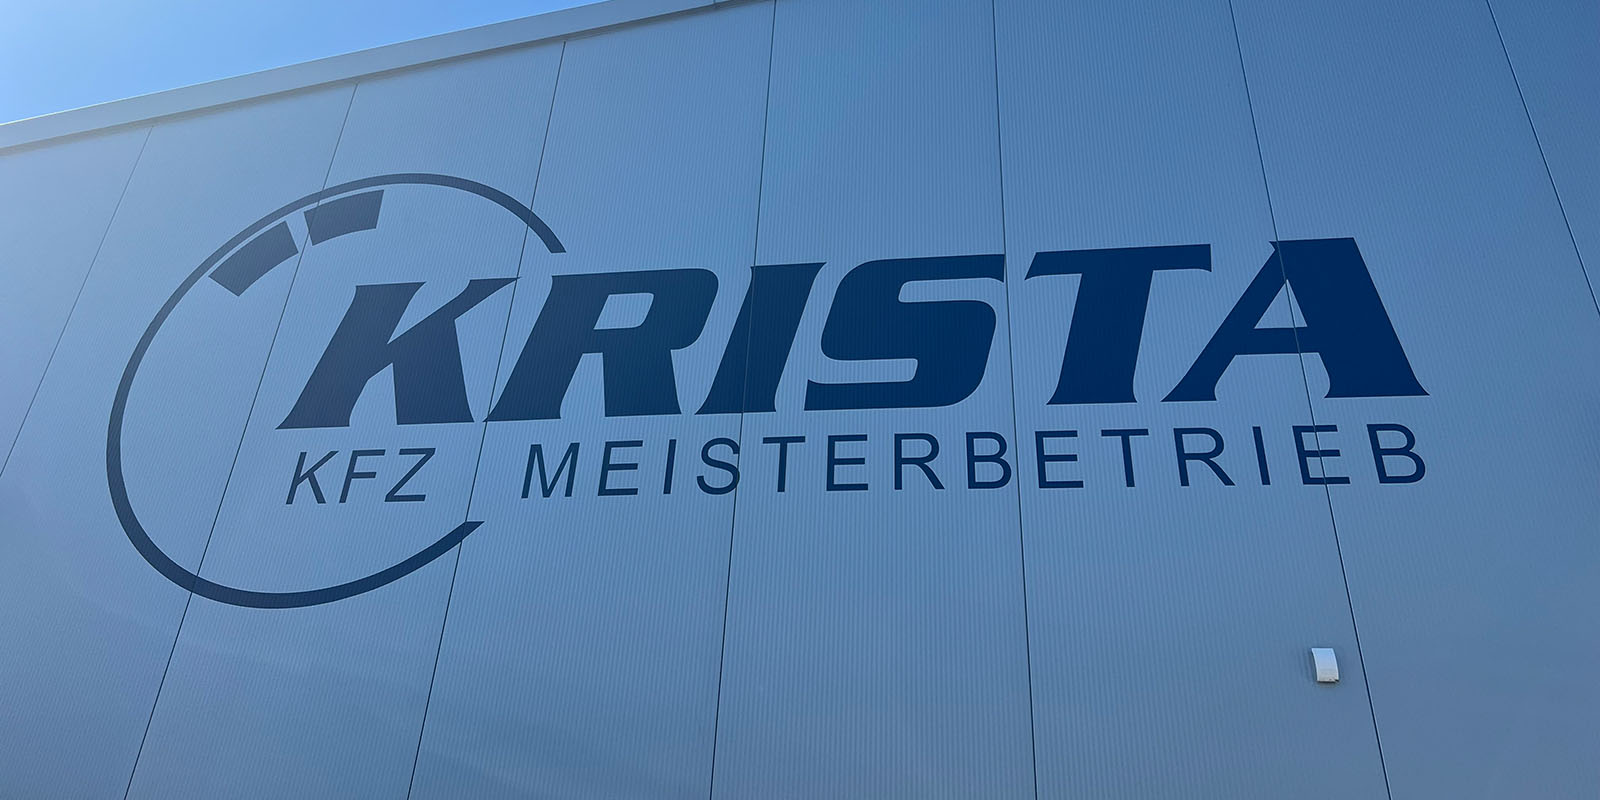 KRISTA Kfz Meisterbetrieb in Pulheim Brauweiler - Werkstatt, Fassade mit Firmenlogo